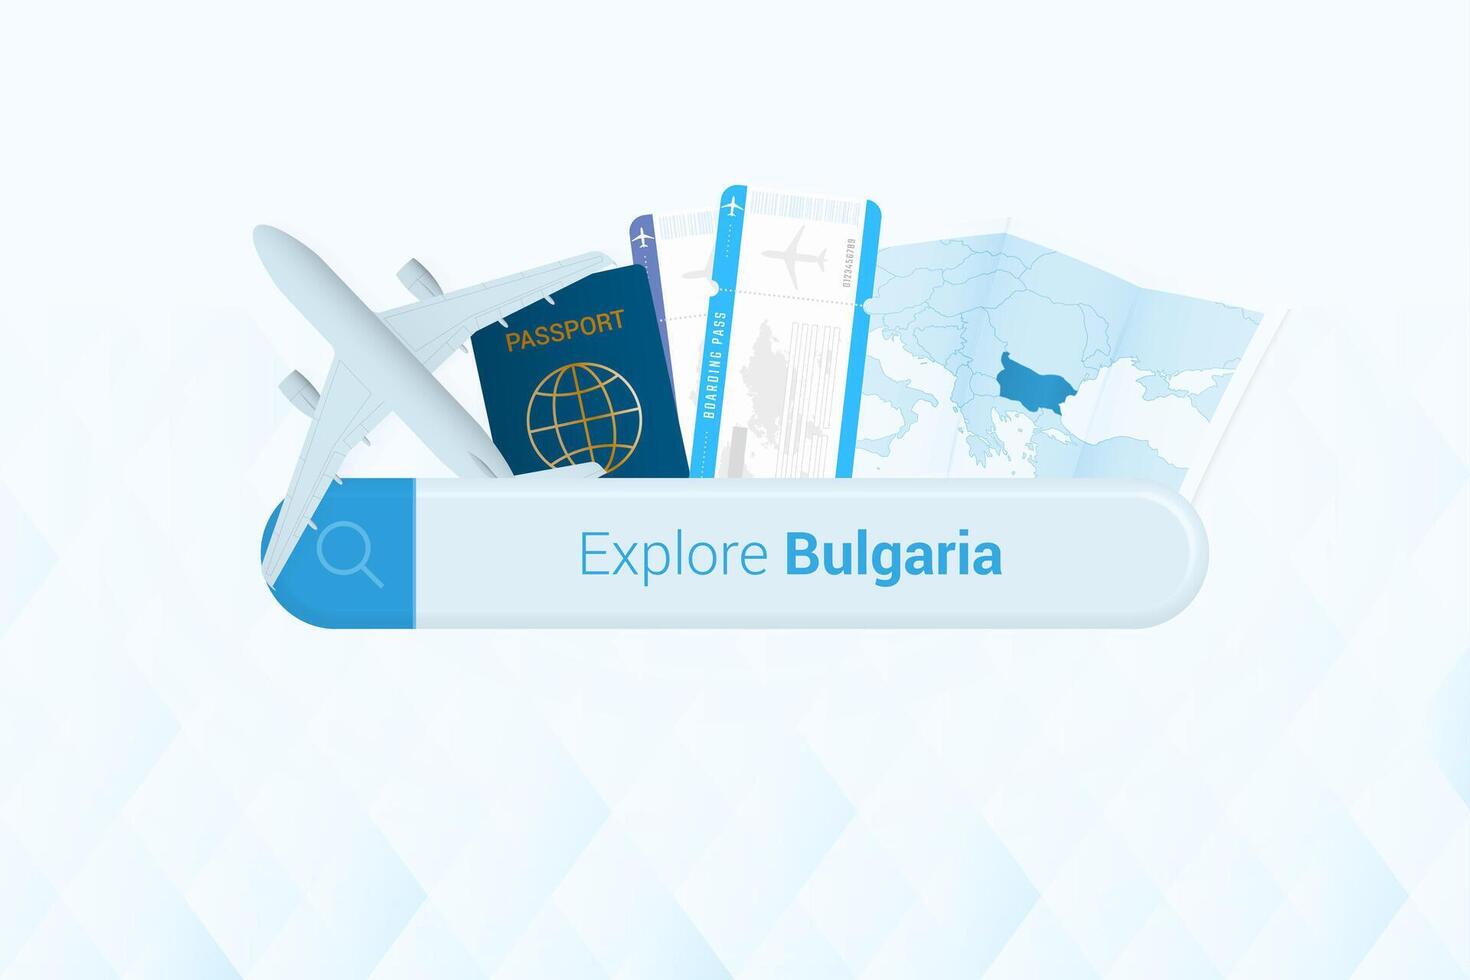 buscando Entradas a Bulgaria o viaje destino en Bulgaria. buscando bar con avión, pasaporte, embarque aprobar, Entradas y mapa. vector